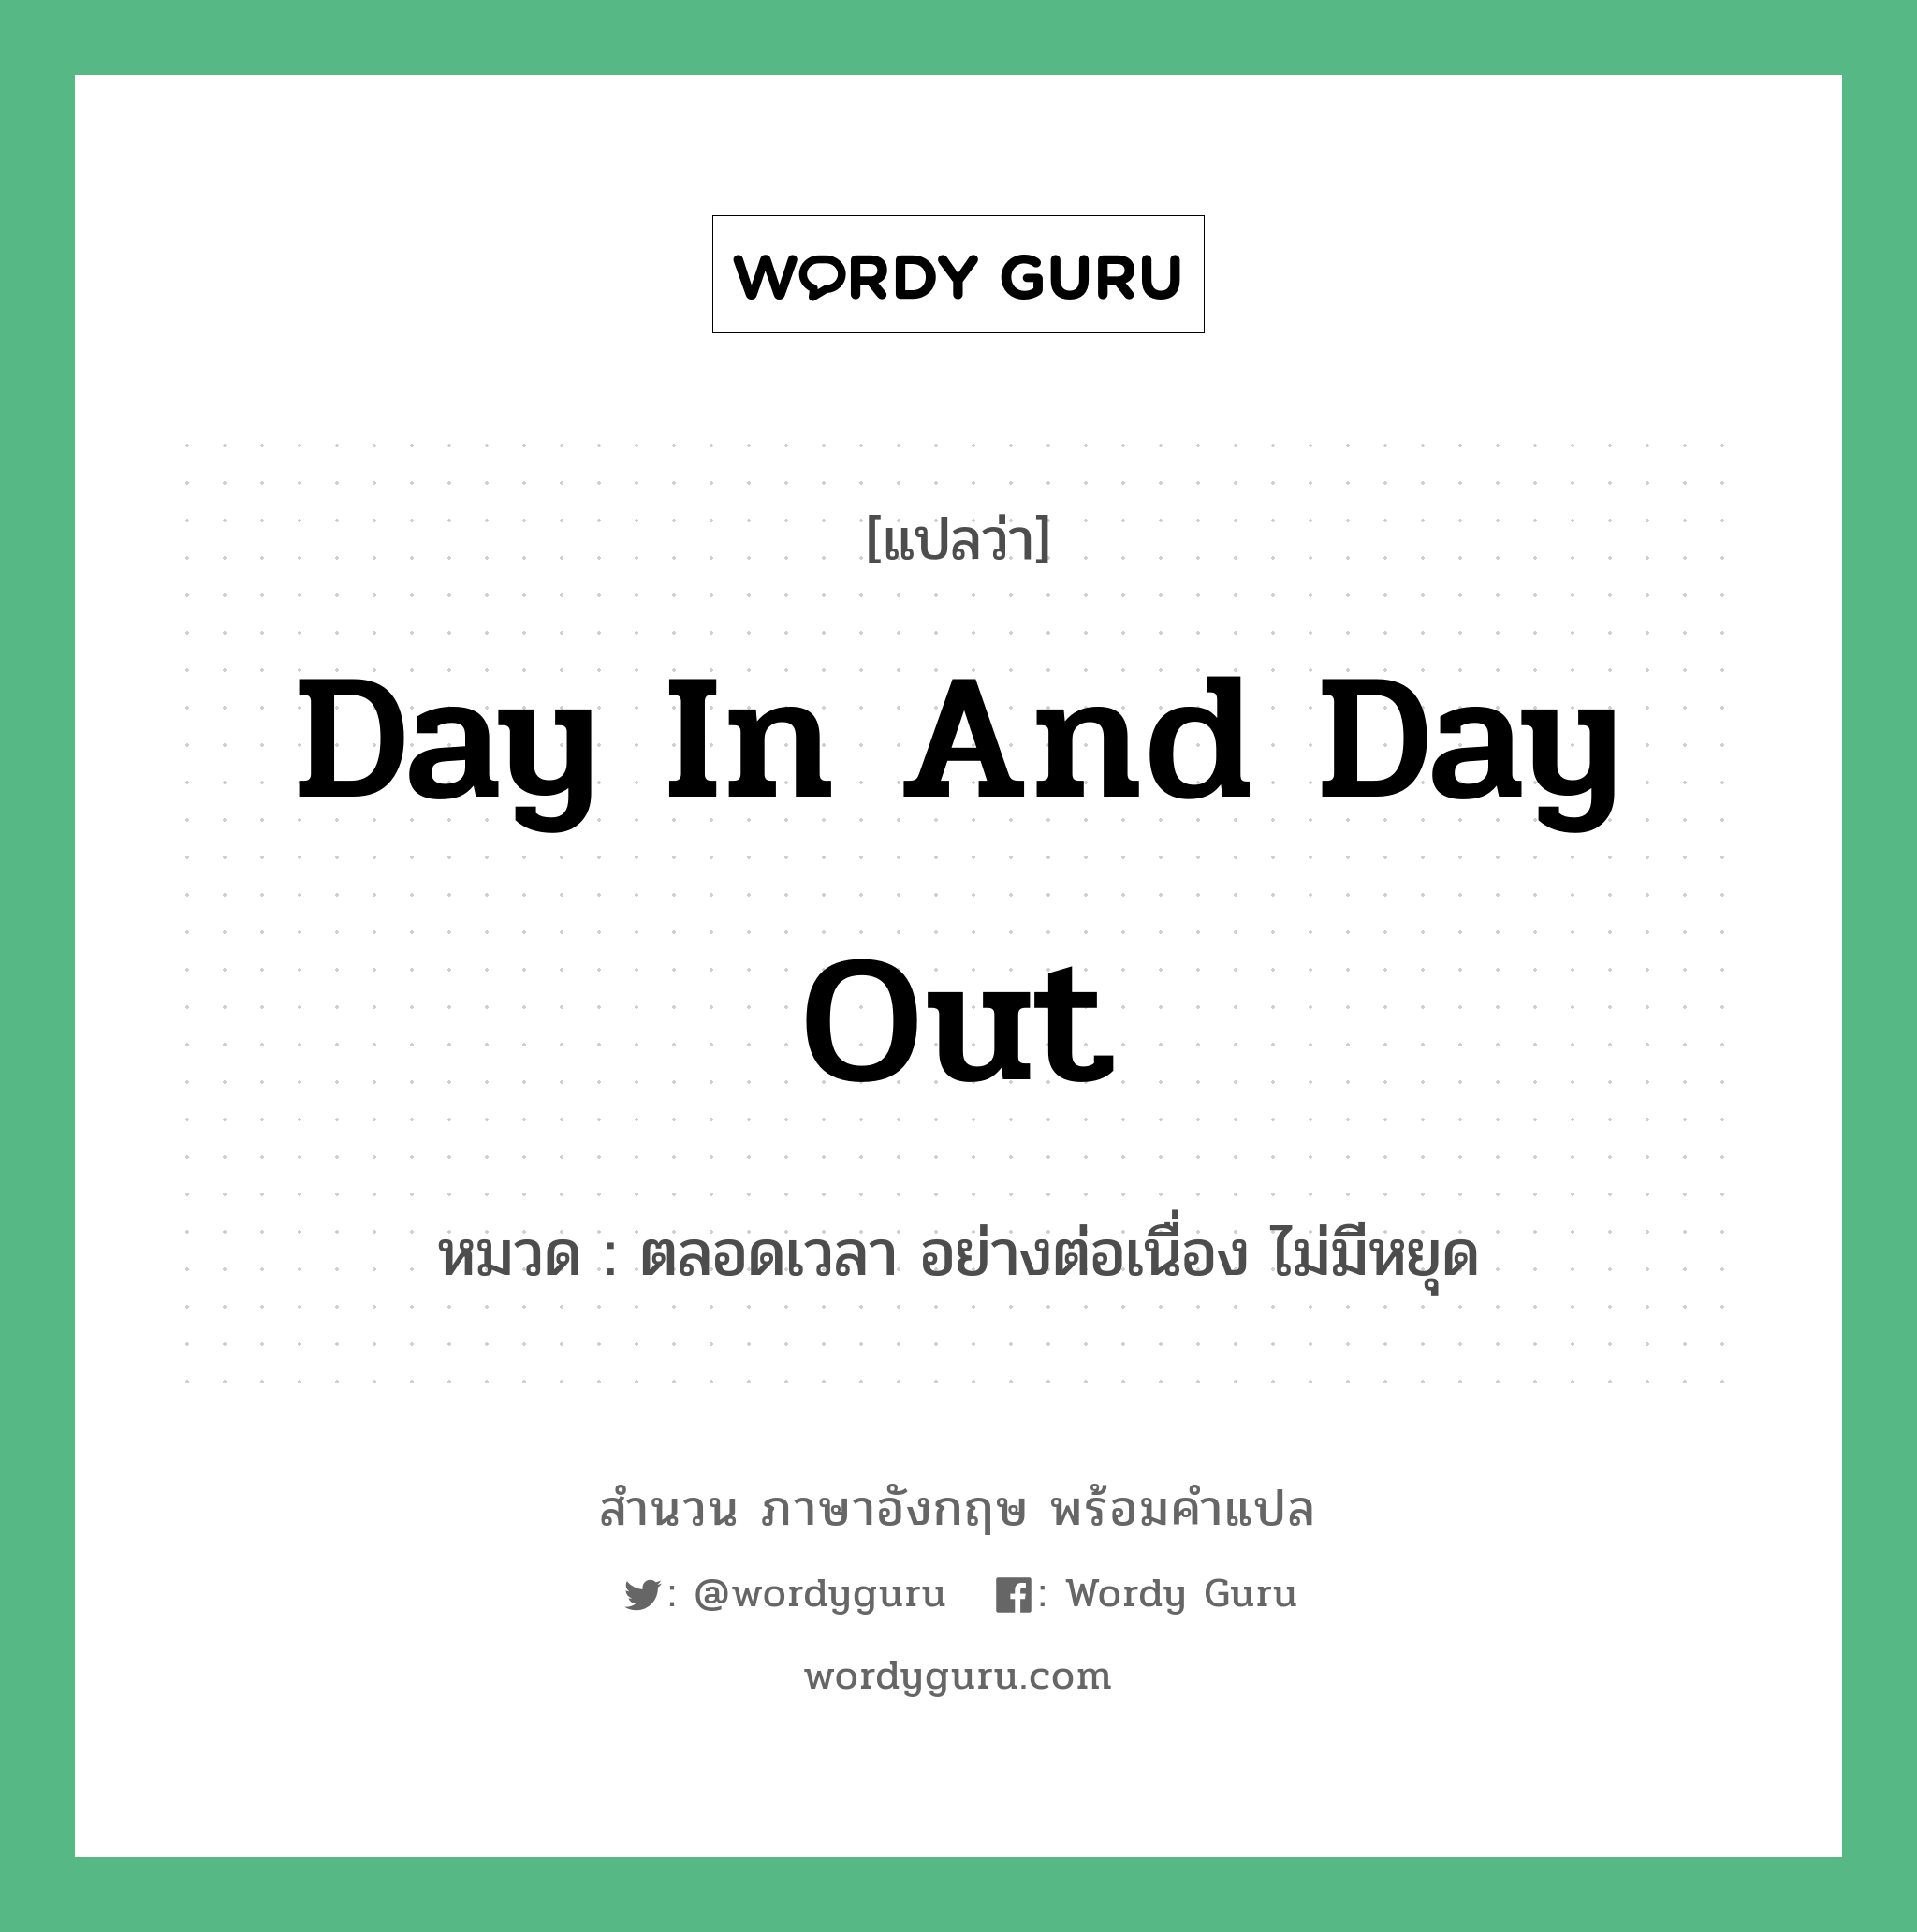 Day in and day out แปลว่า?, สำนวนภาษาอังกฤษ Day in and day out หมวด ตลอดเวลา อย่างต่อเนื่อง ไม่มีหยุด